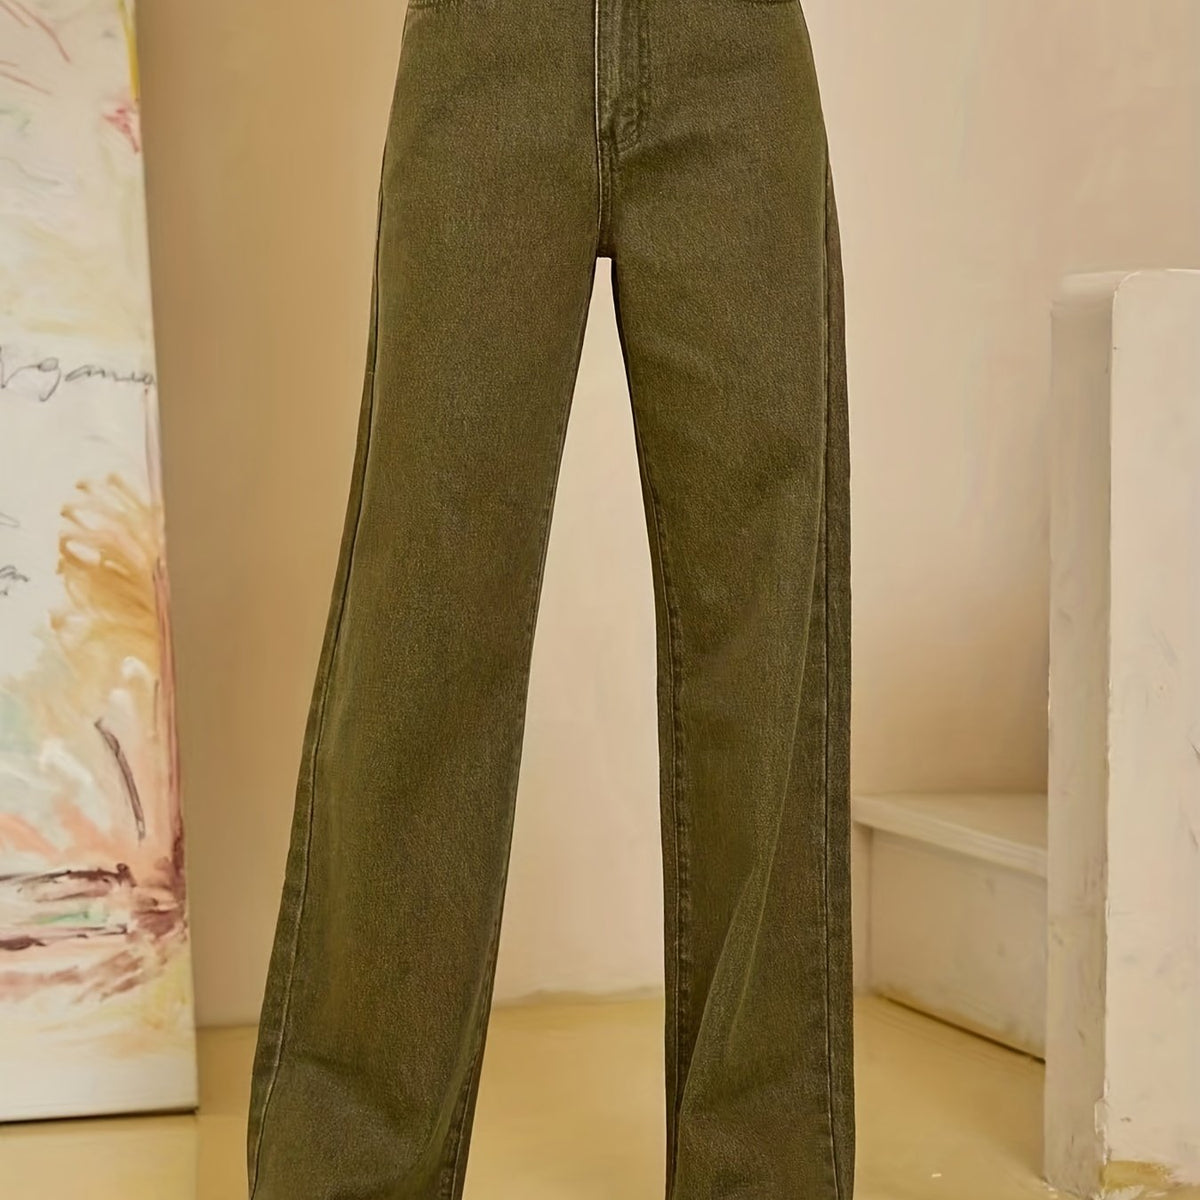 「lovevop」Olive Green Fayed Hem Jeans, Solid Color Slant Pocket Straight Leg Denim Pants, Women's Denim Jeans & Clothing